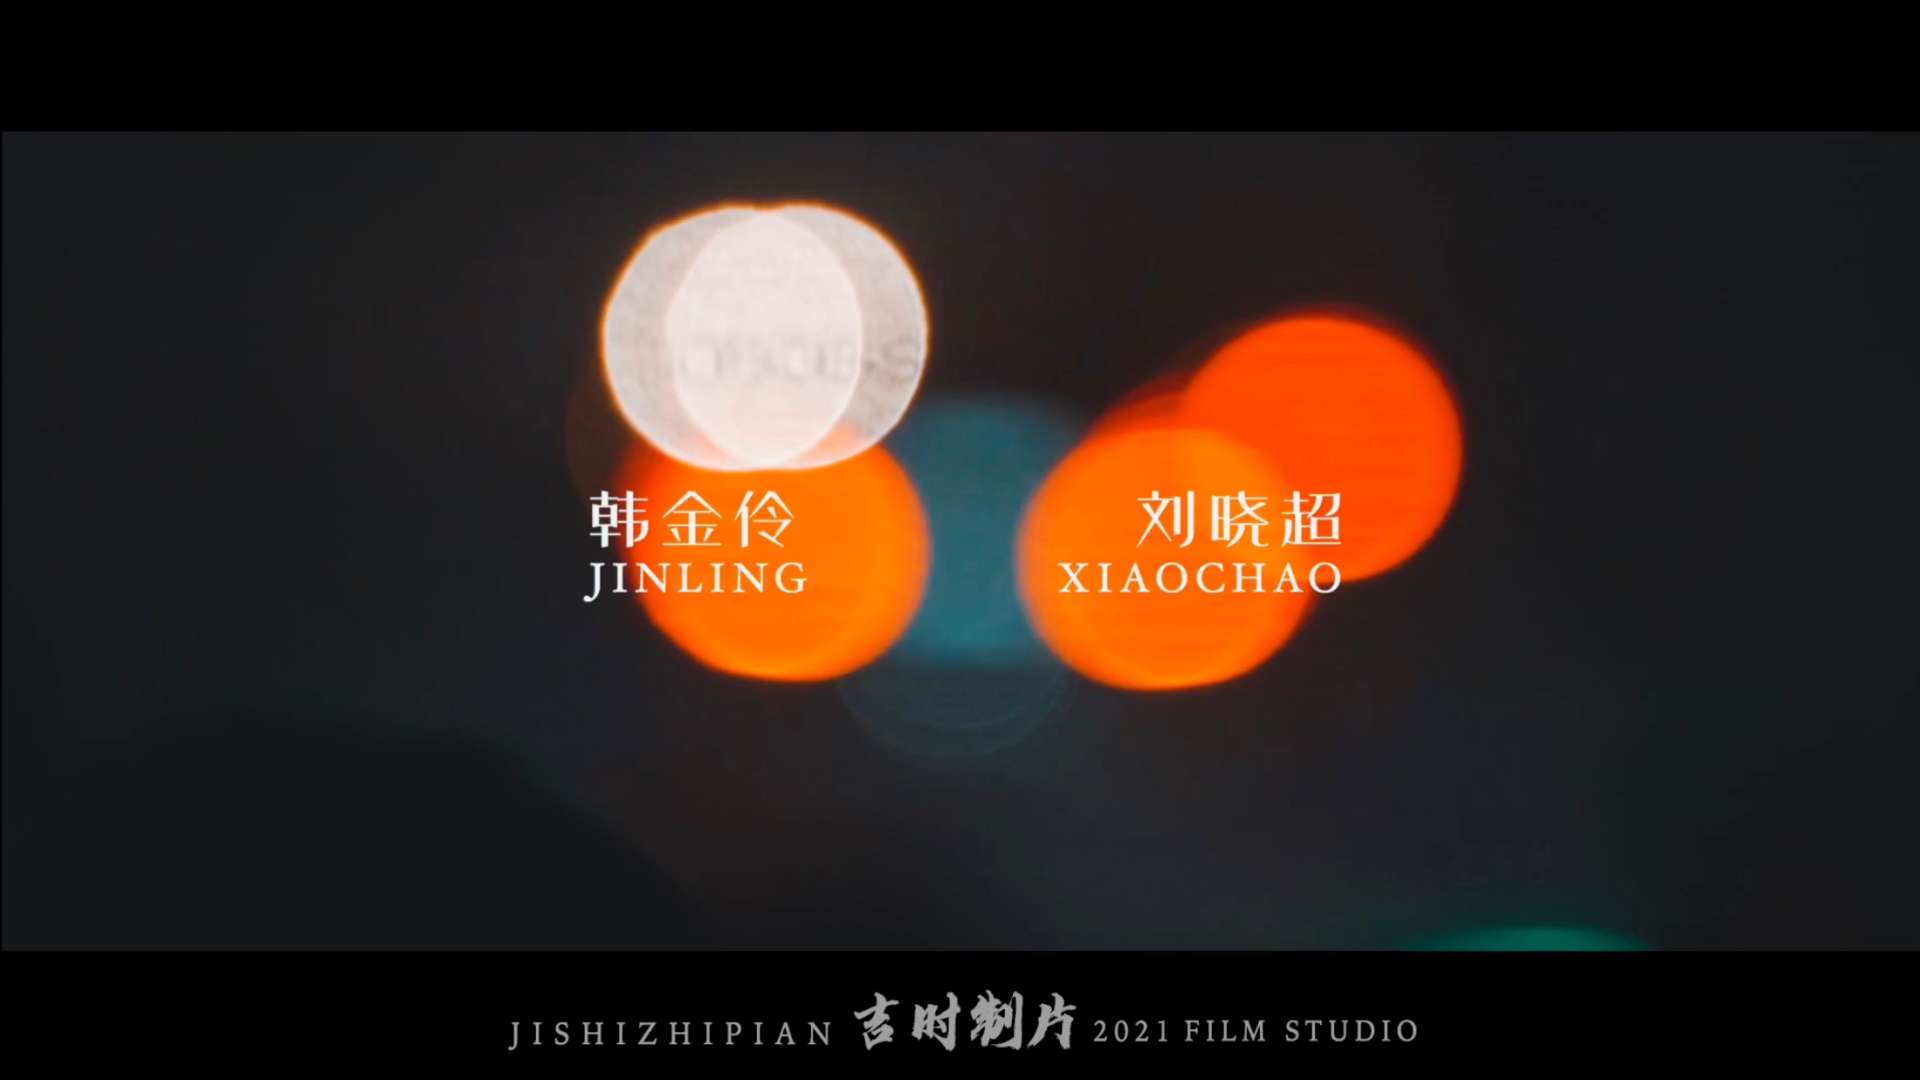 刘晓超 韩金伶 婚礼席前快剪 玖月轻奢婚礼策划/吉时电影制片